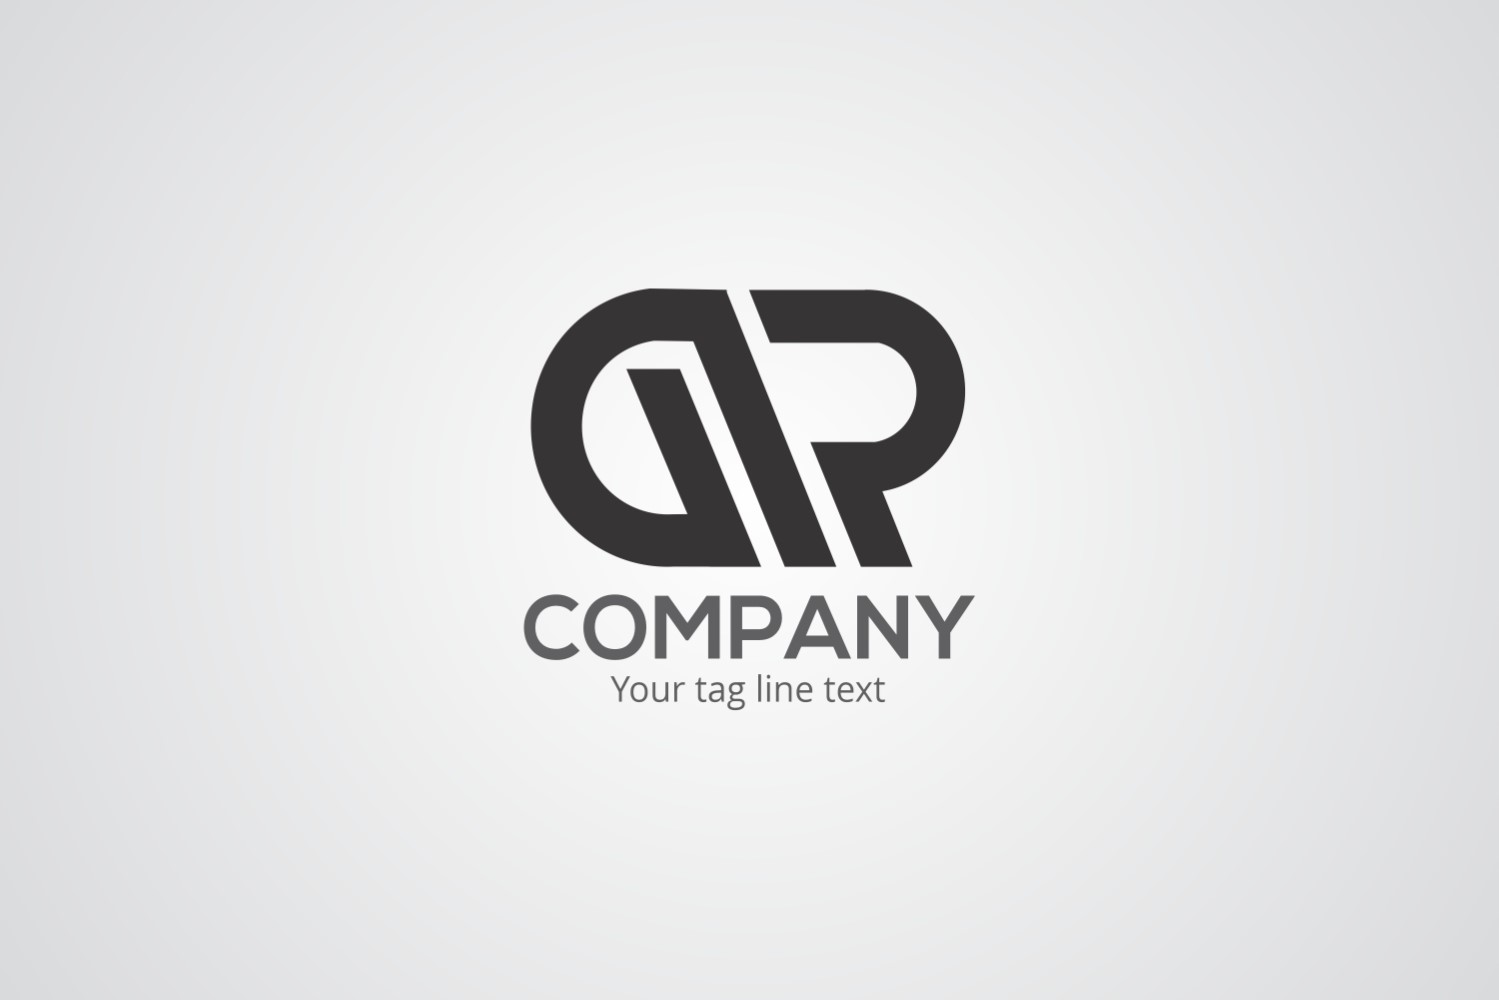 AR Company Logo Design Template